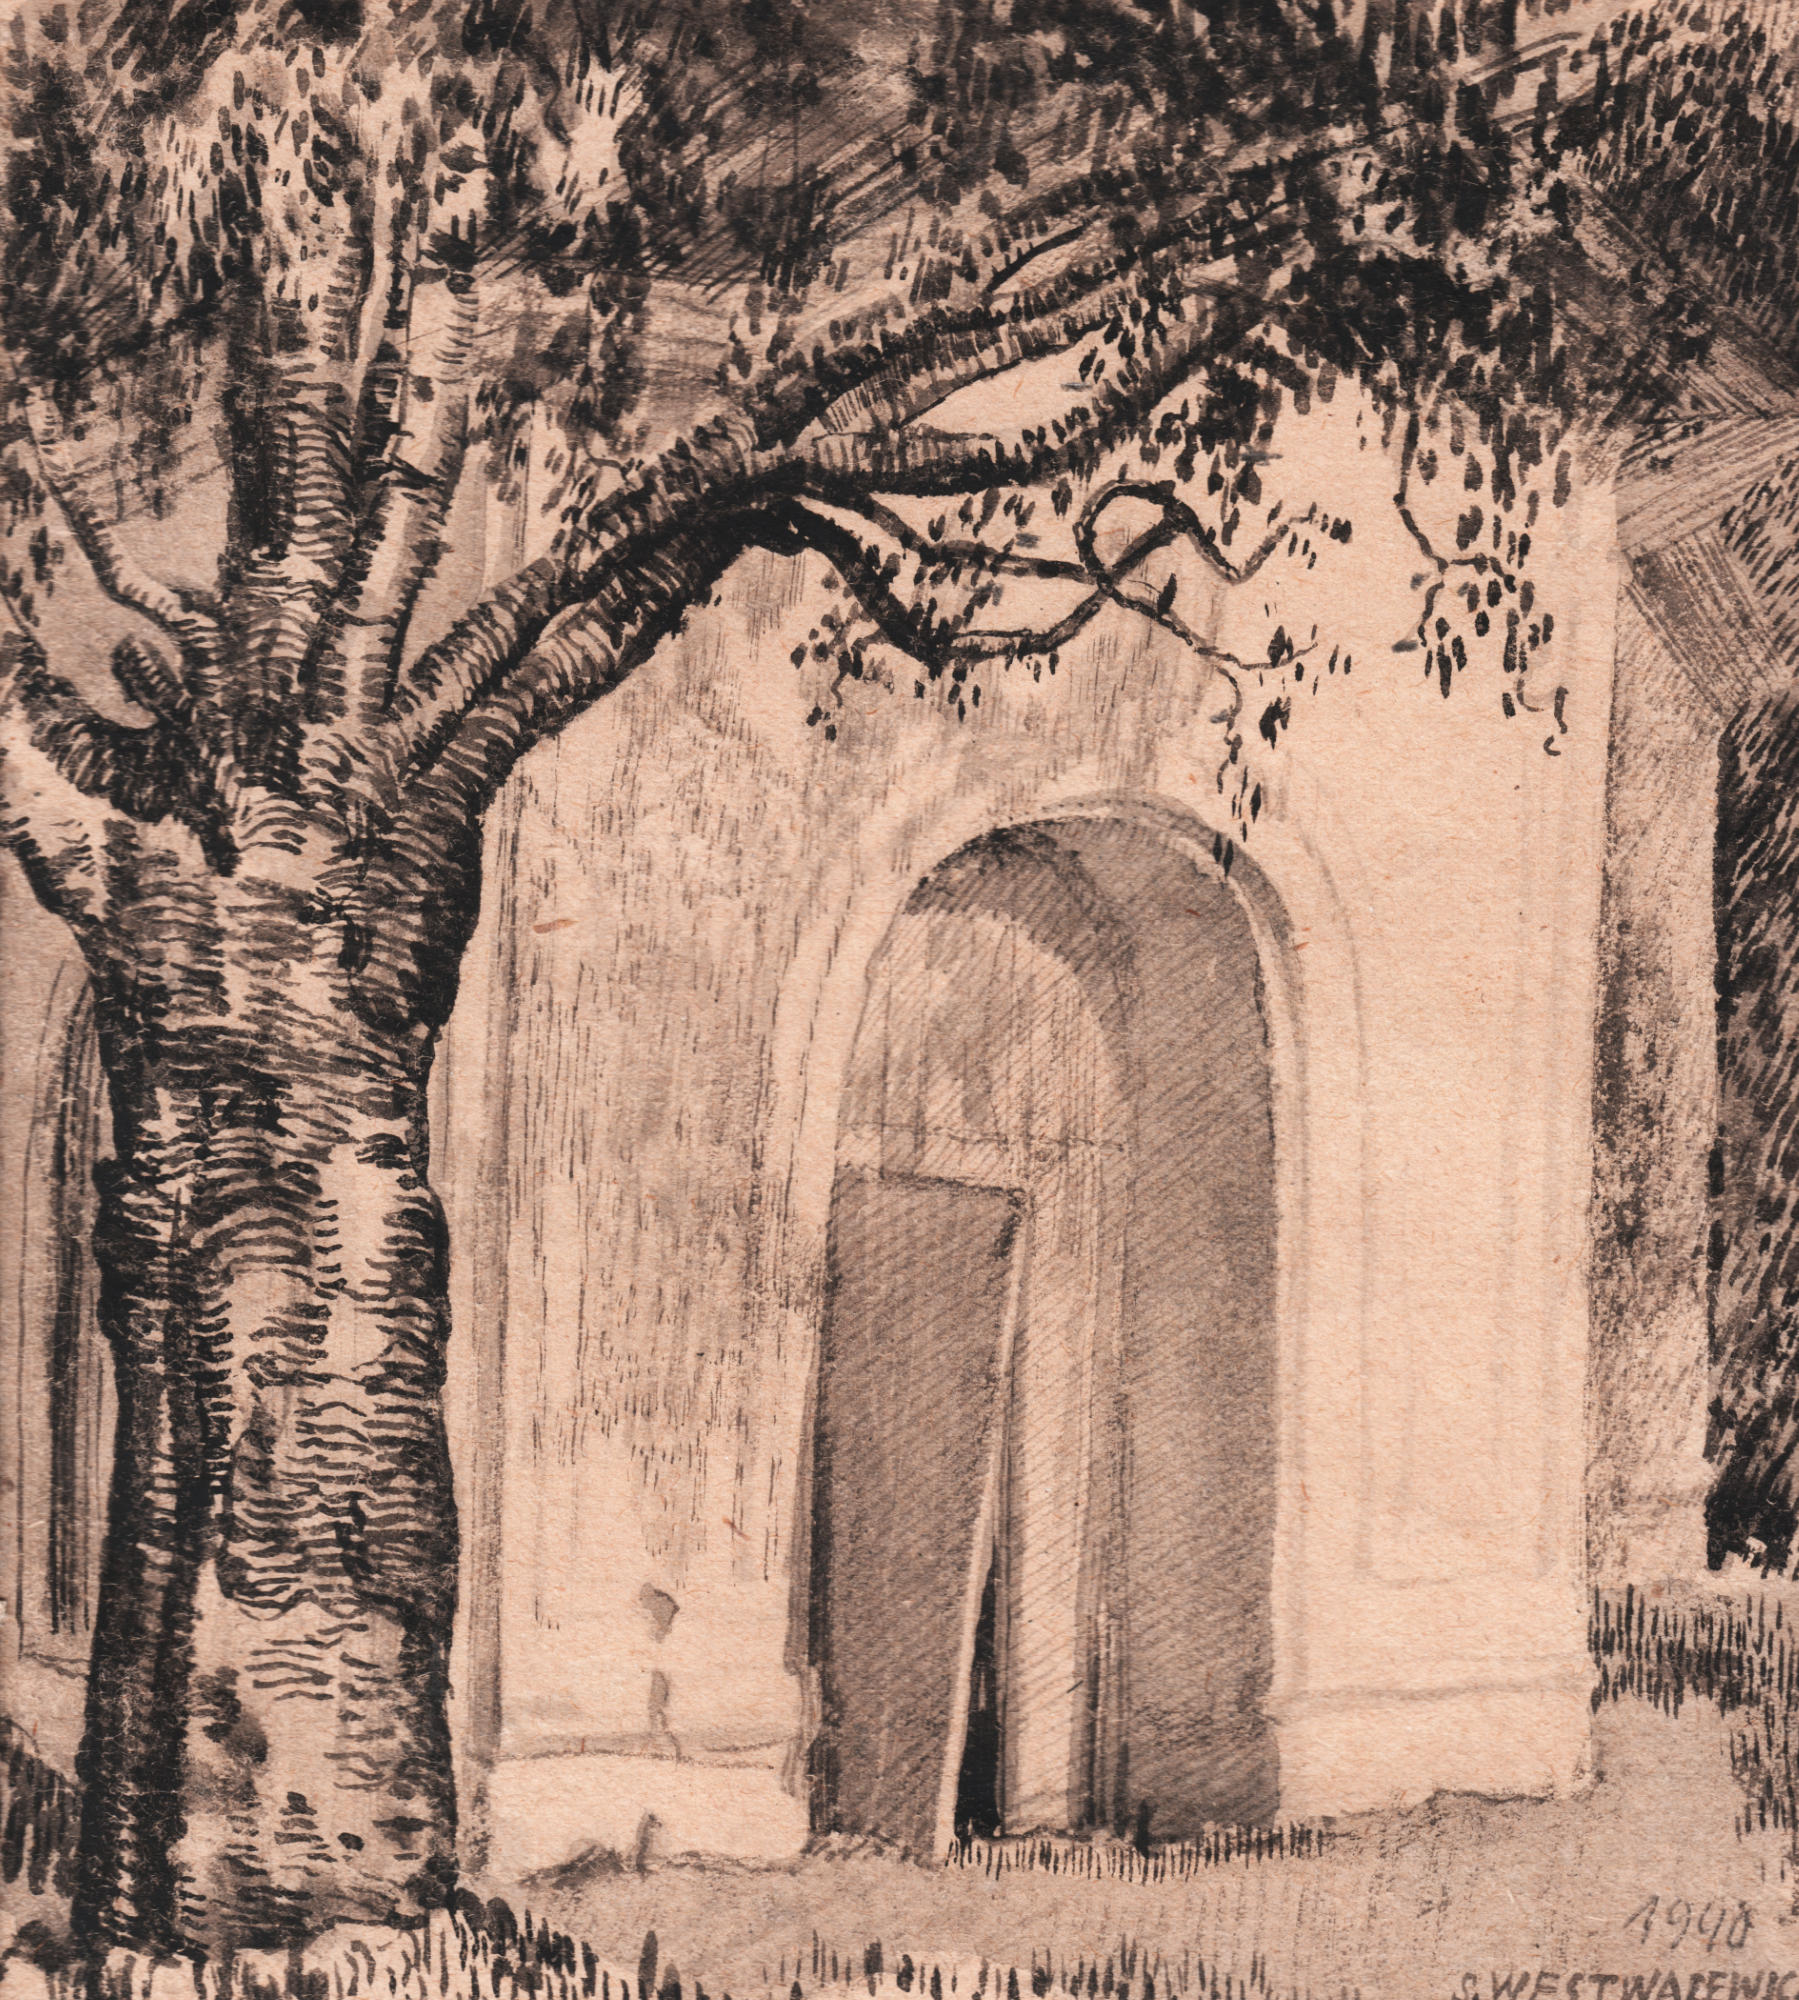 Rysunek ołówkiemi piórkiem. Pień drzewa i wejście do budynku z uchylonymi drzwiami.